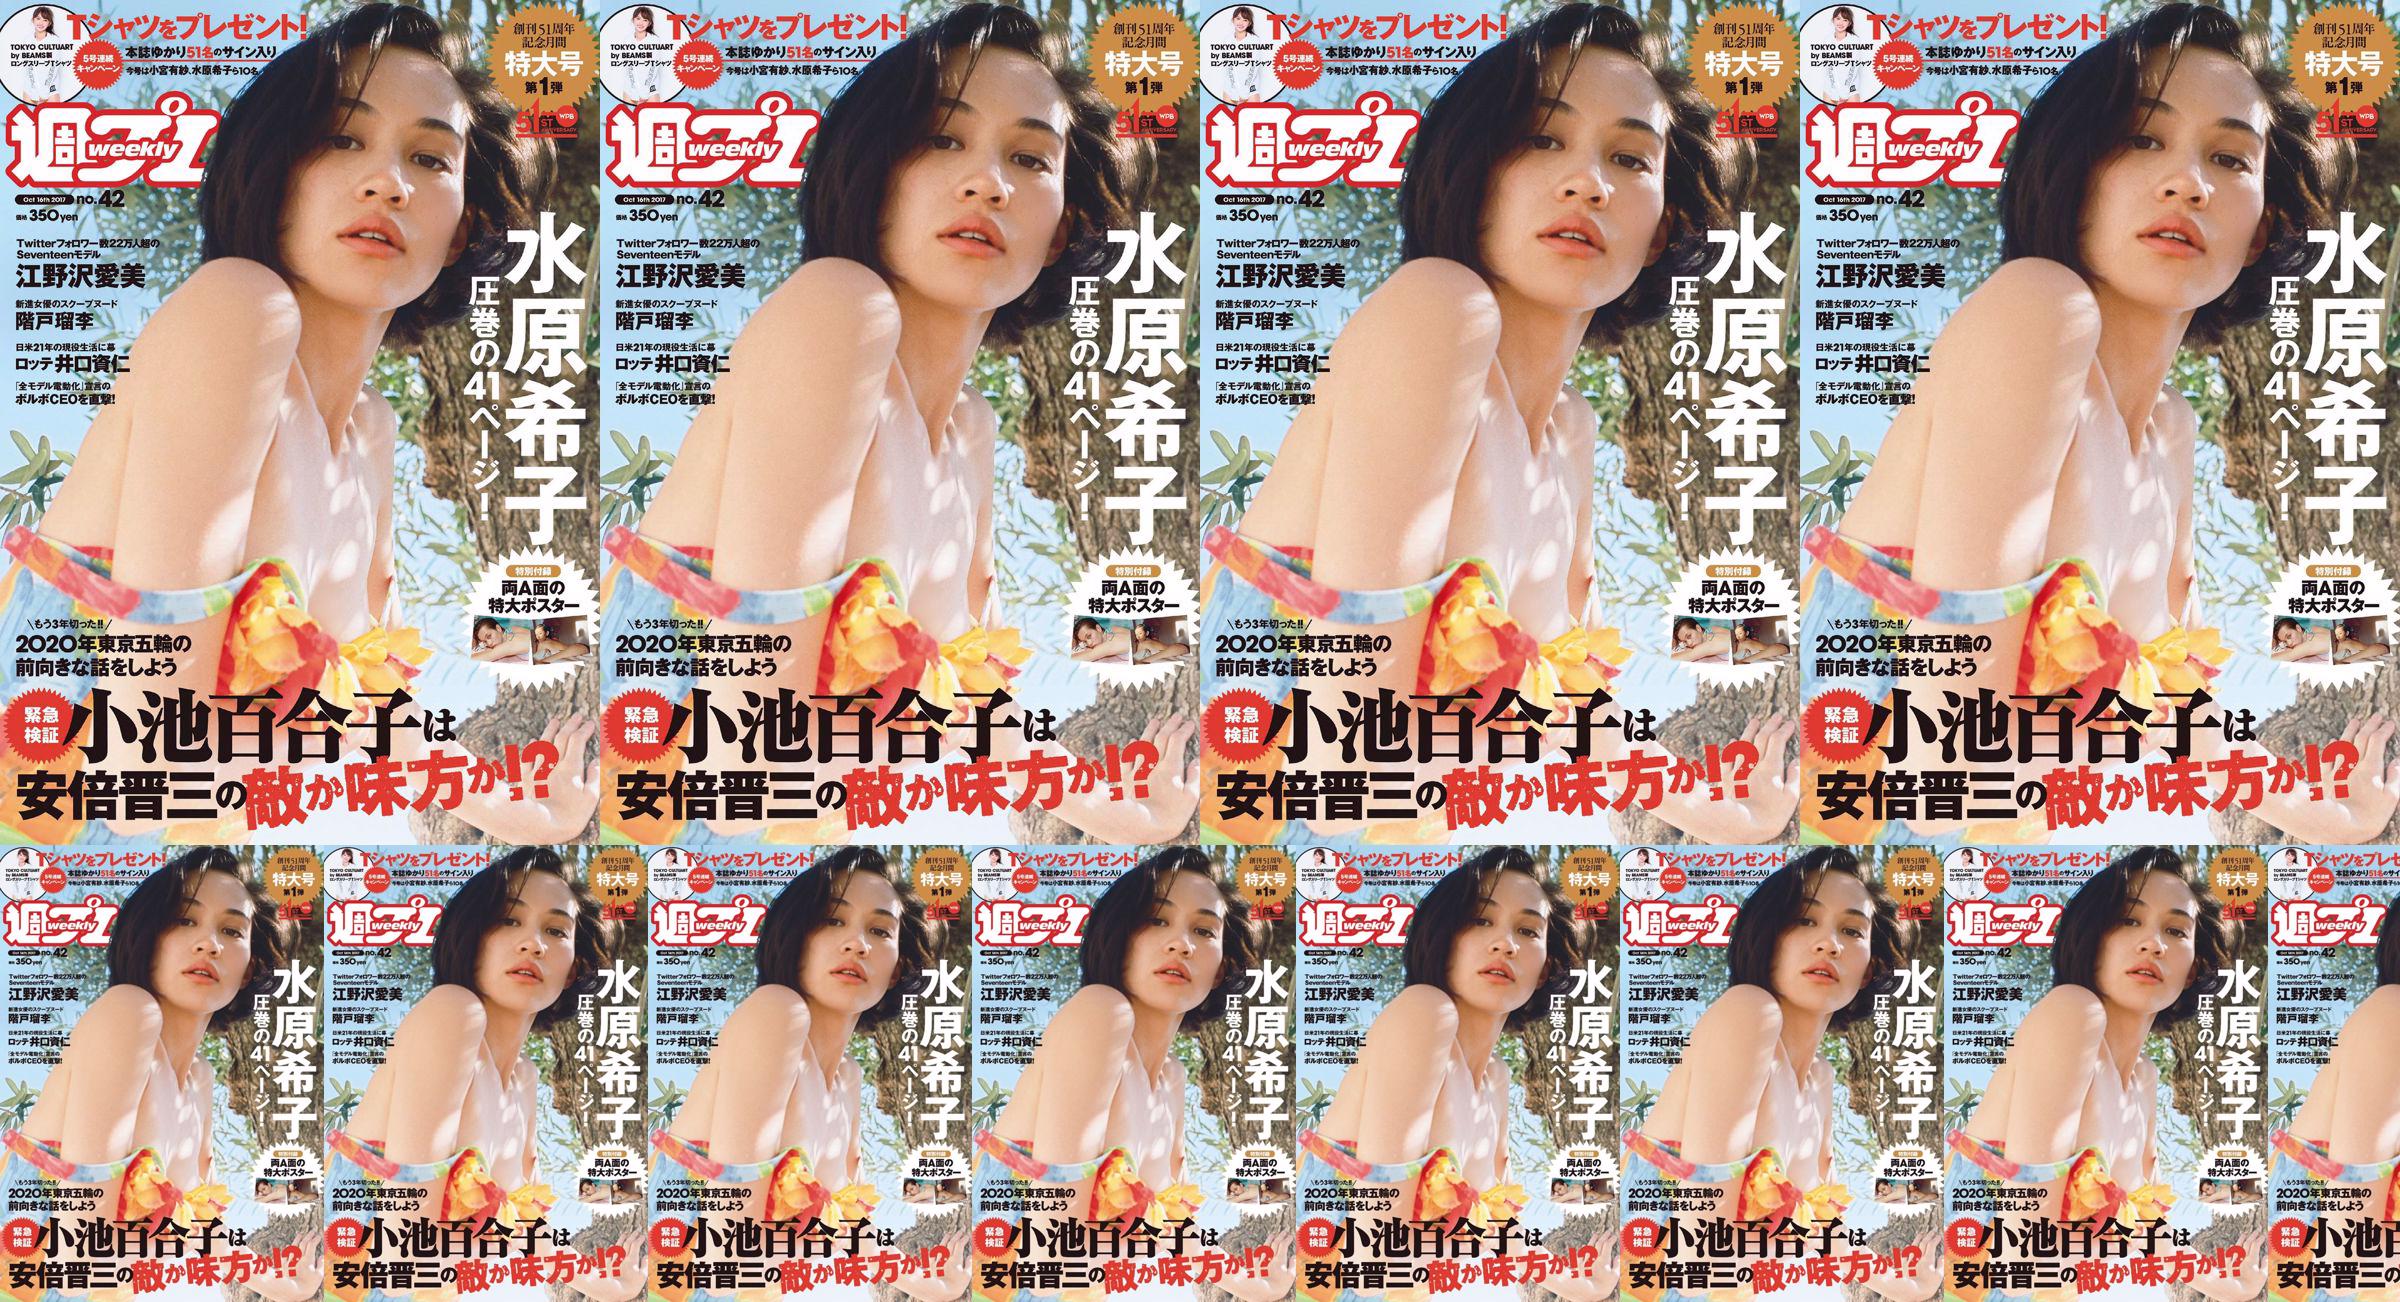 Kiko Mizuhara Manami Enosawa Serina Fukui Miu Nakamura Ruri Shinato [Weekly Playboy] 2017 No.42 Photo Magazine No.32ae61 Page 3